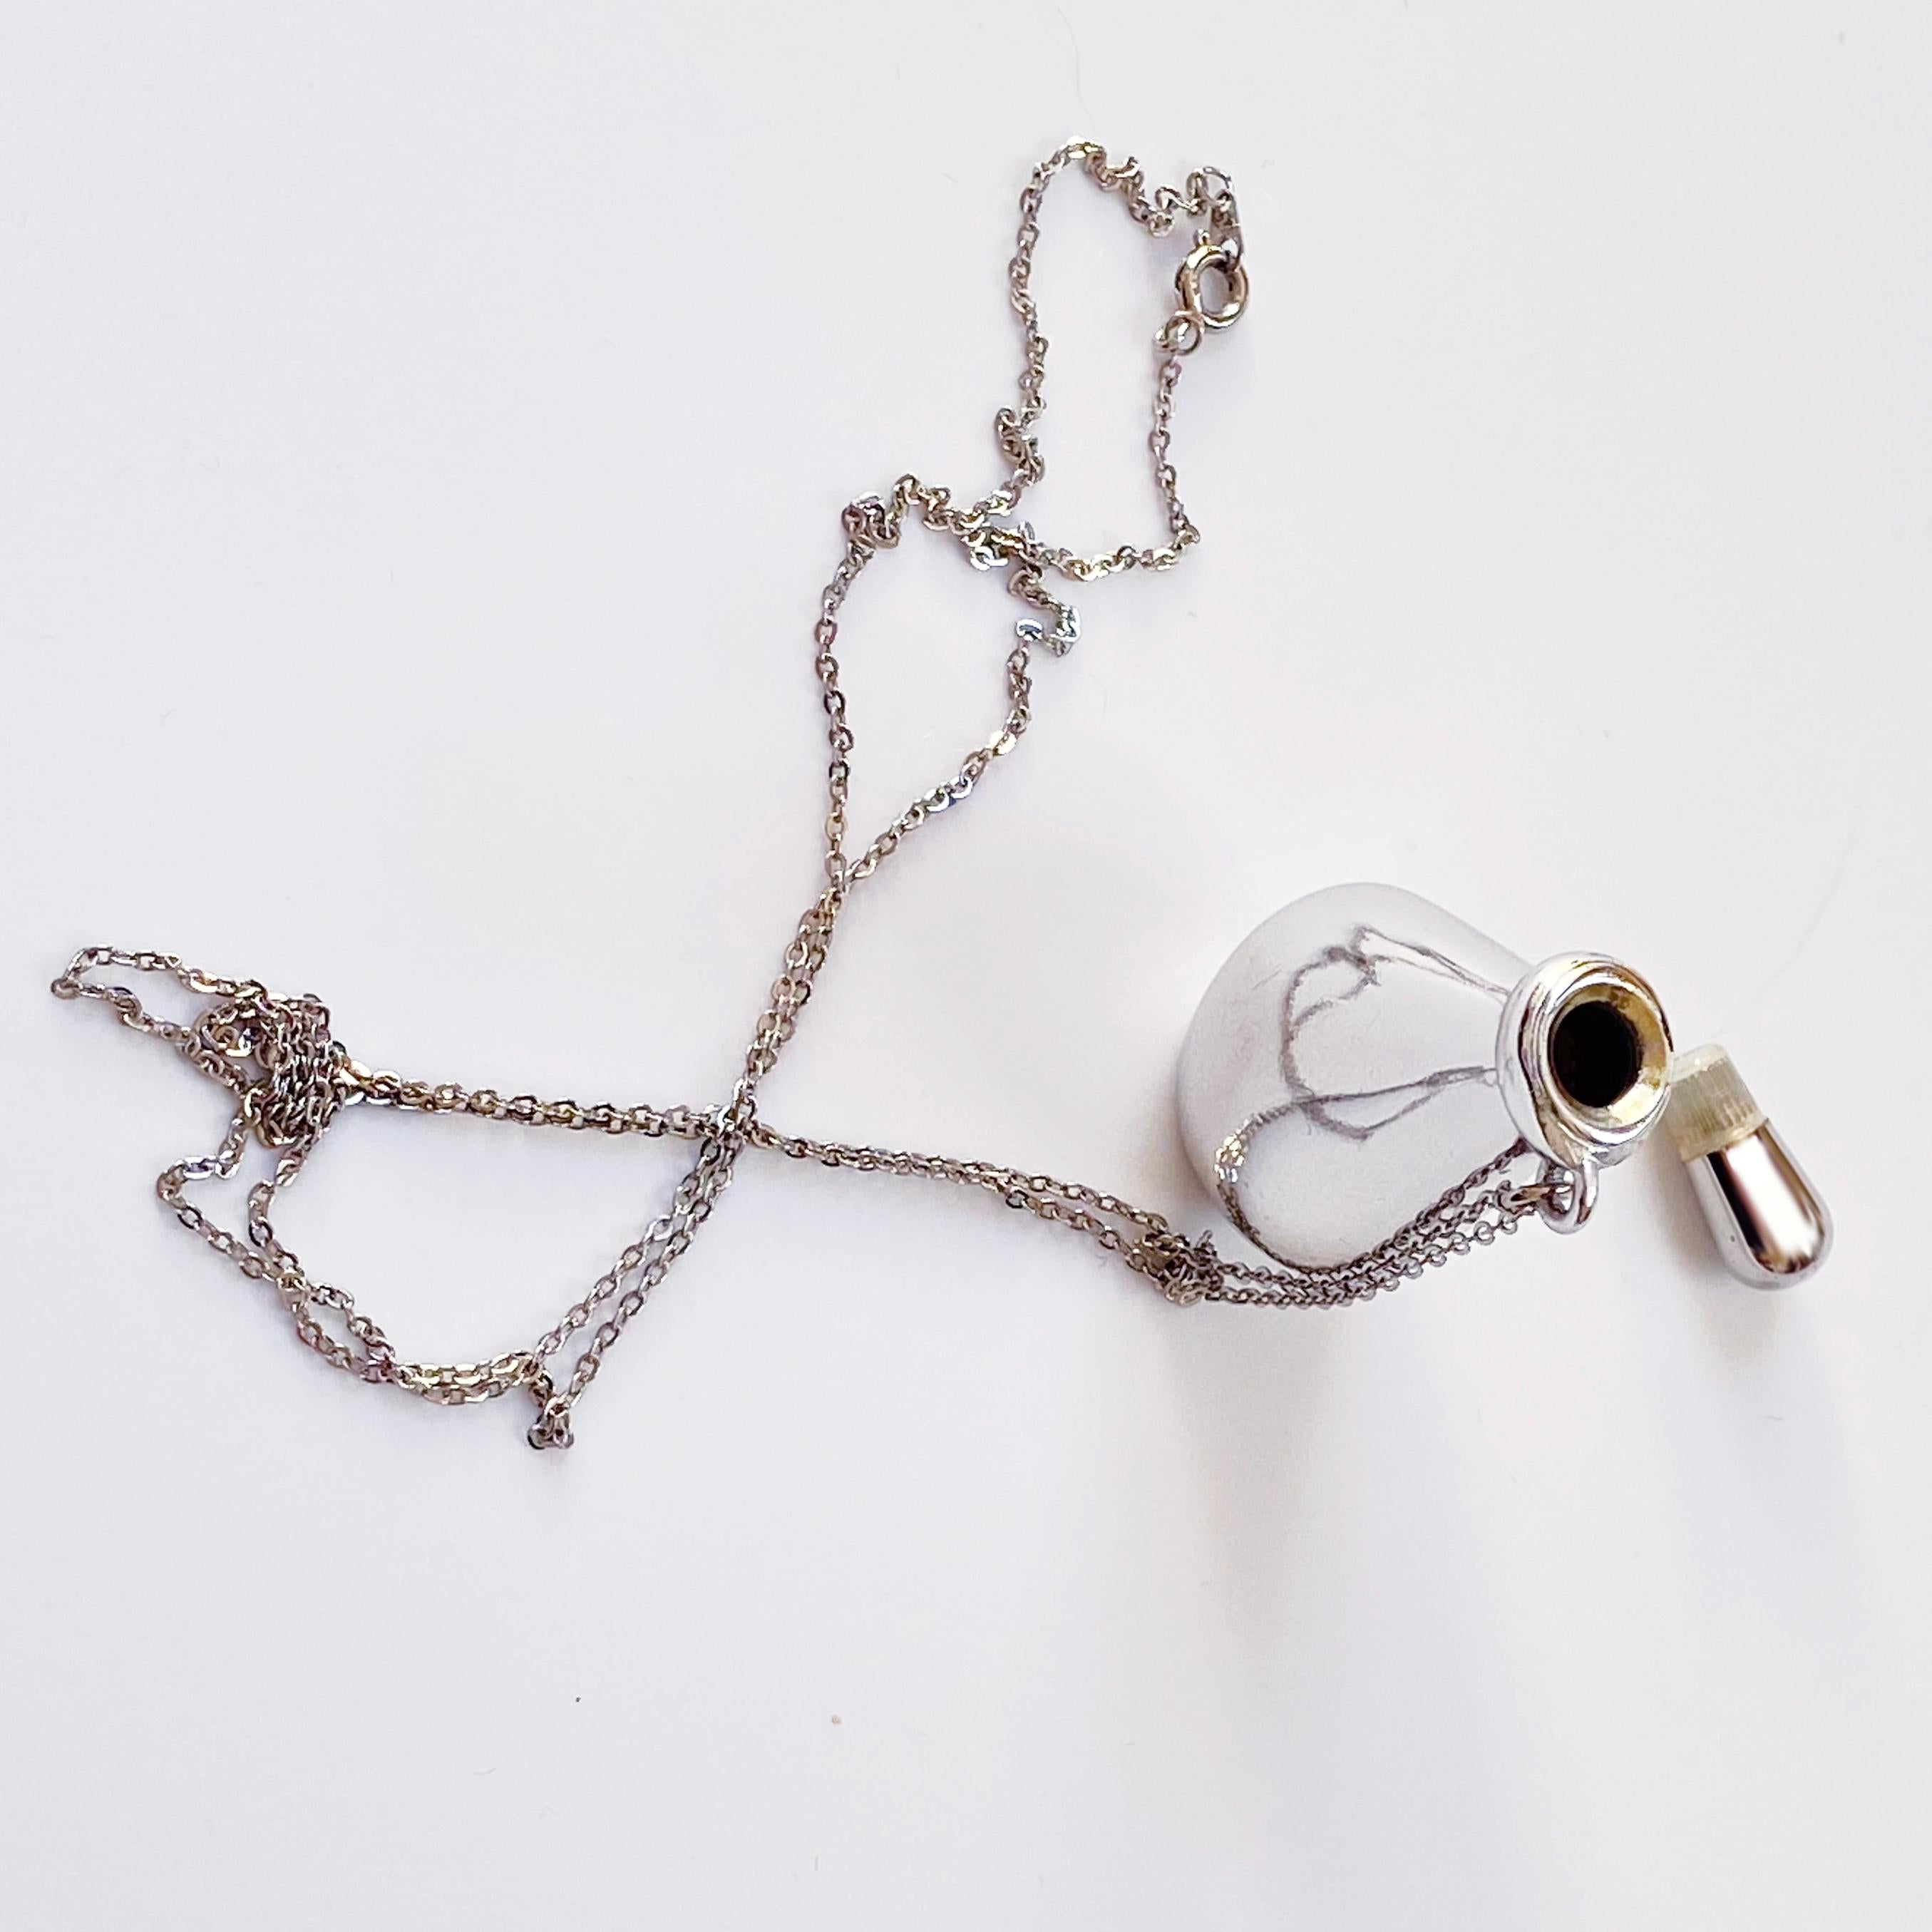 Modernist No-Scuff Elsa Peretti for Halston Perfume Bottle Pendant Necklace Sterling Chain